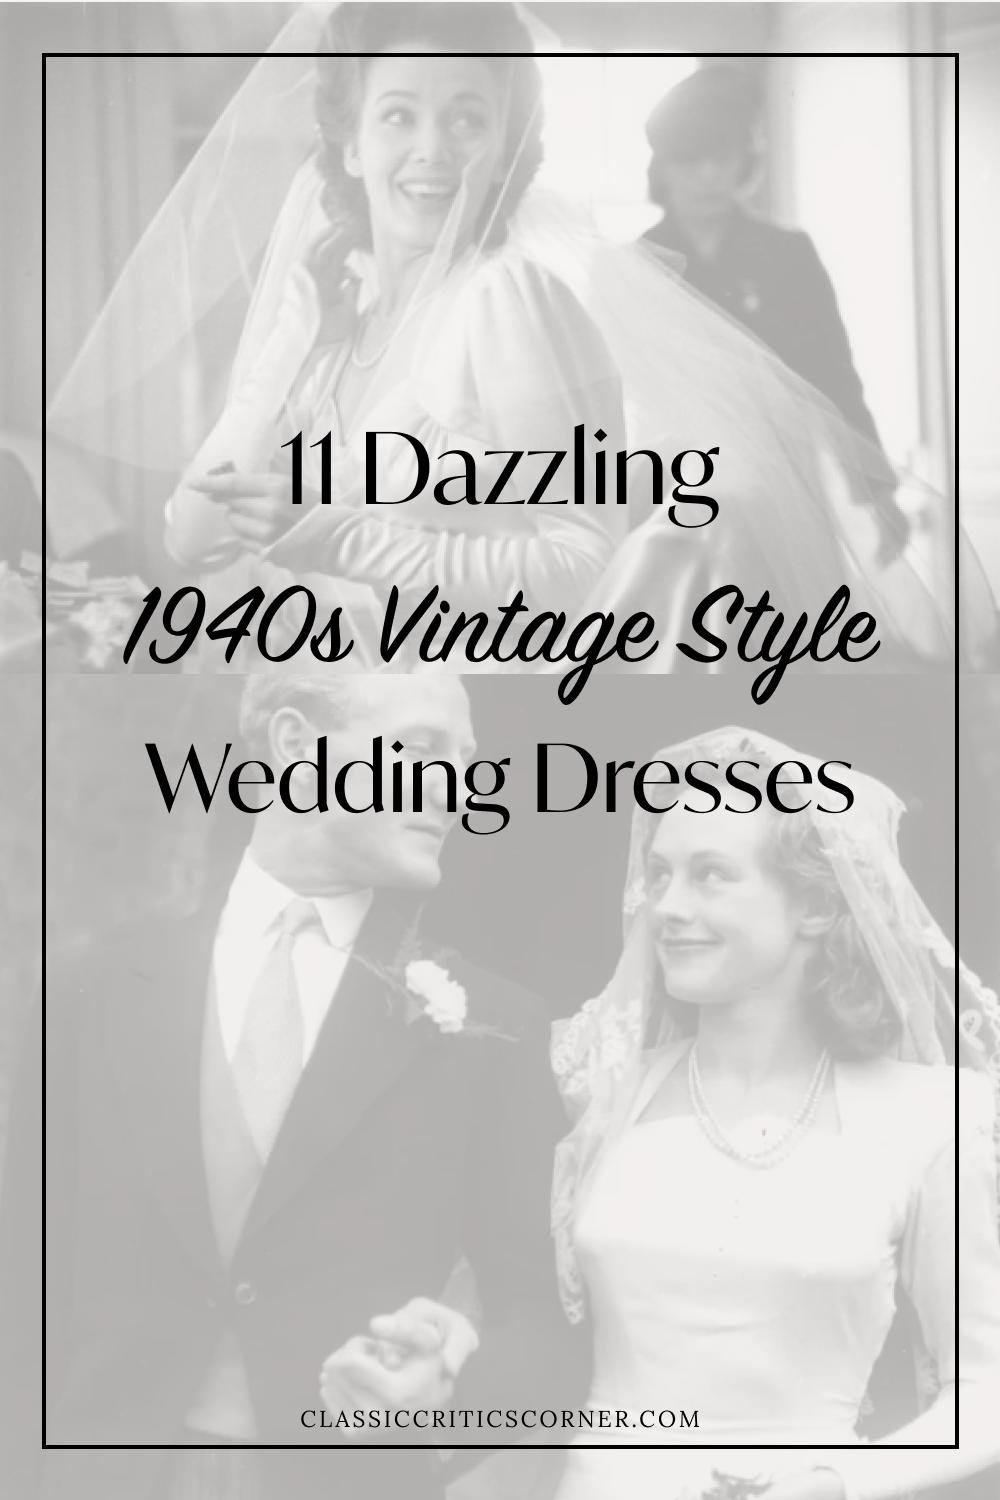 1940S Wedding Dresses - June Bridals